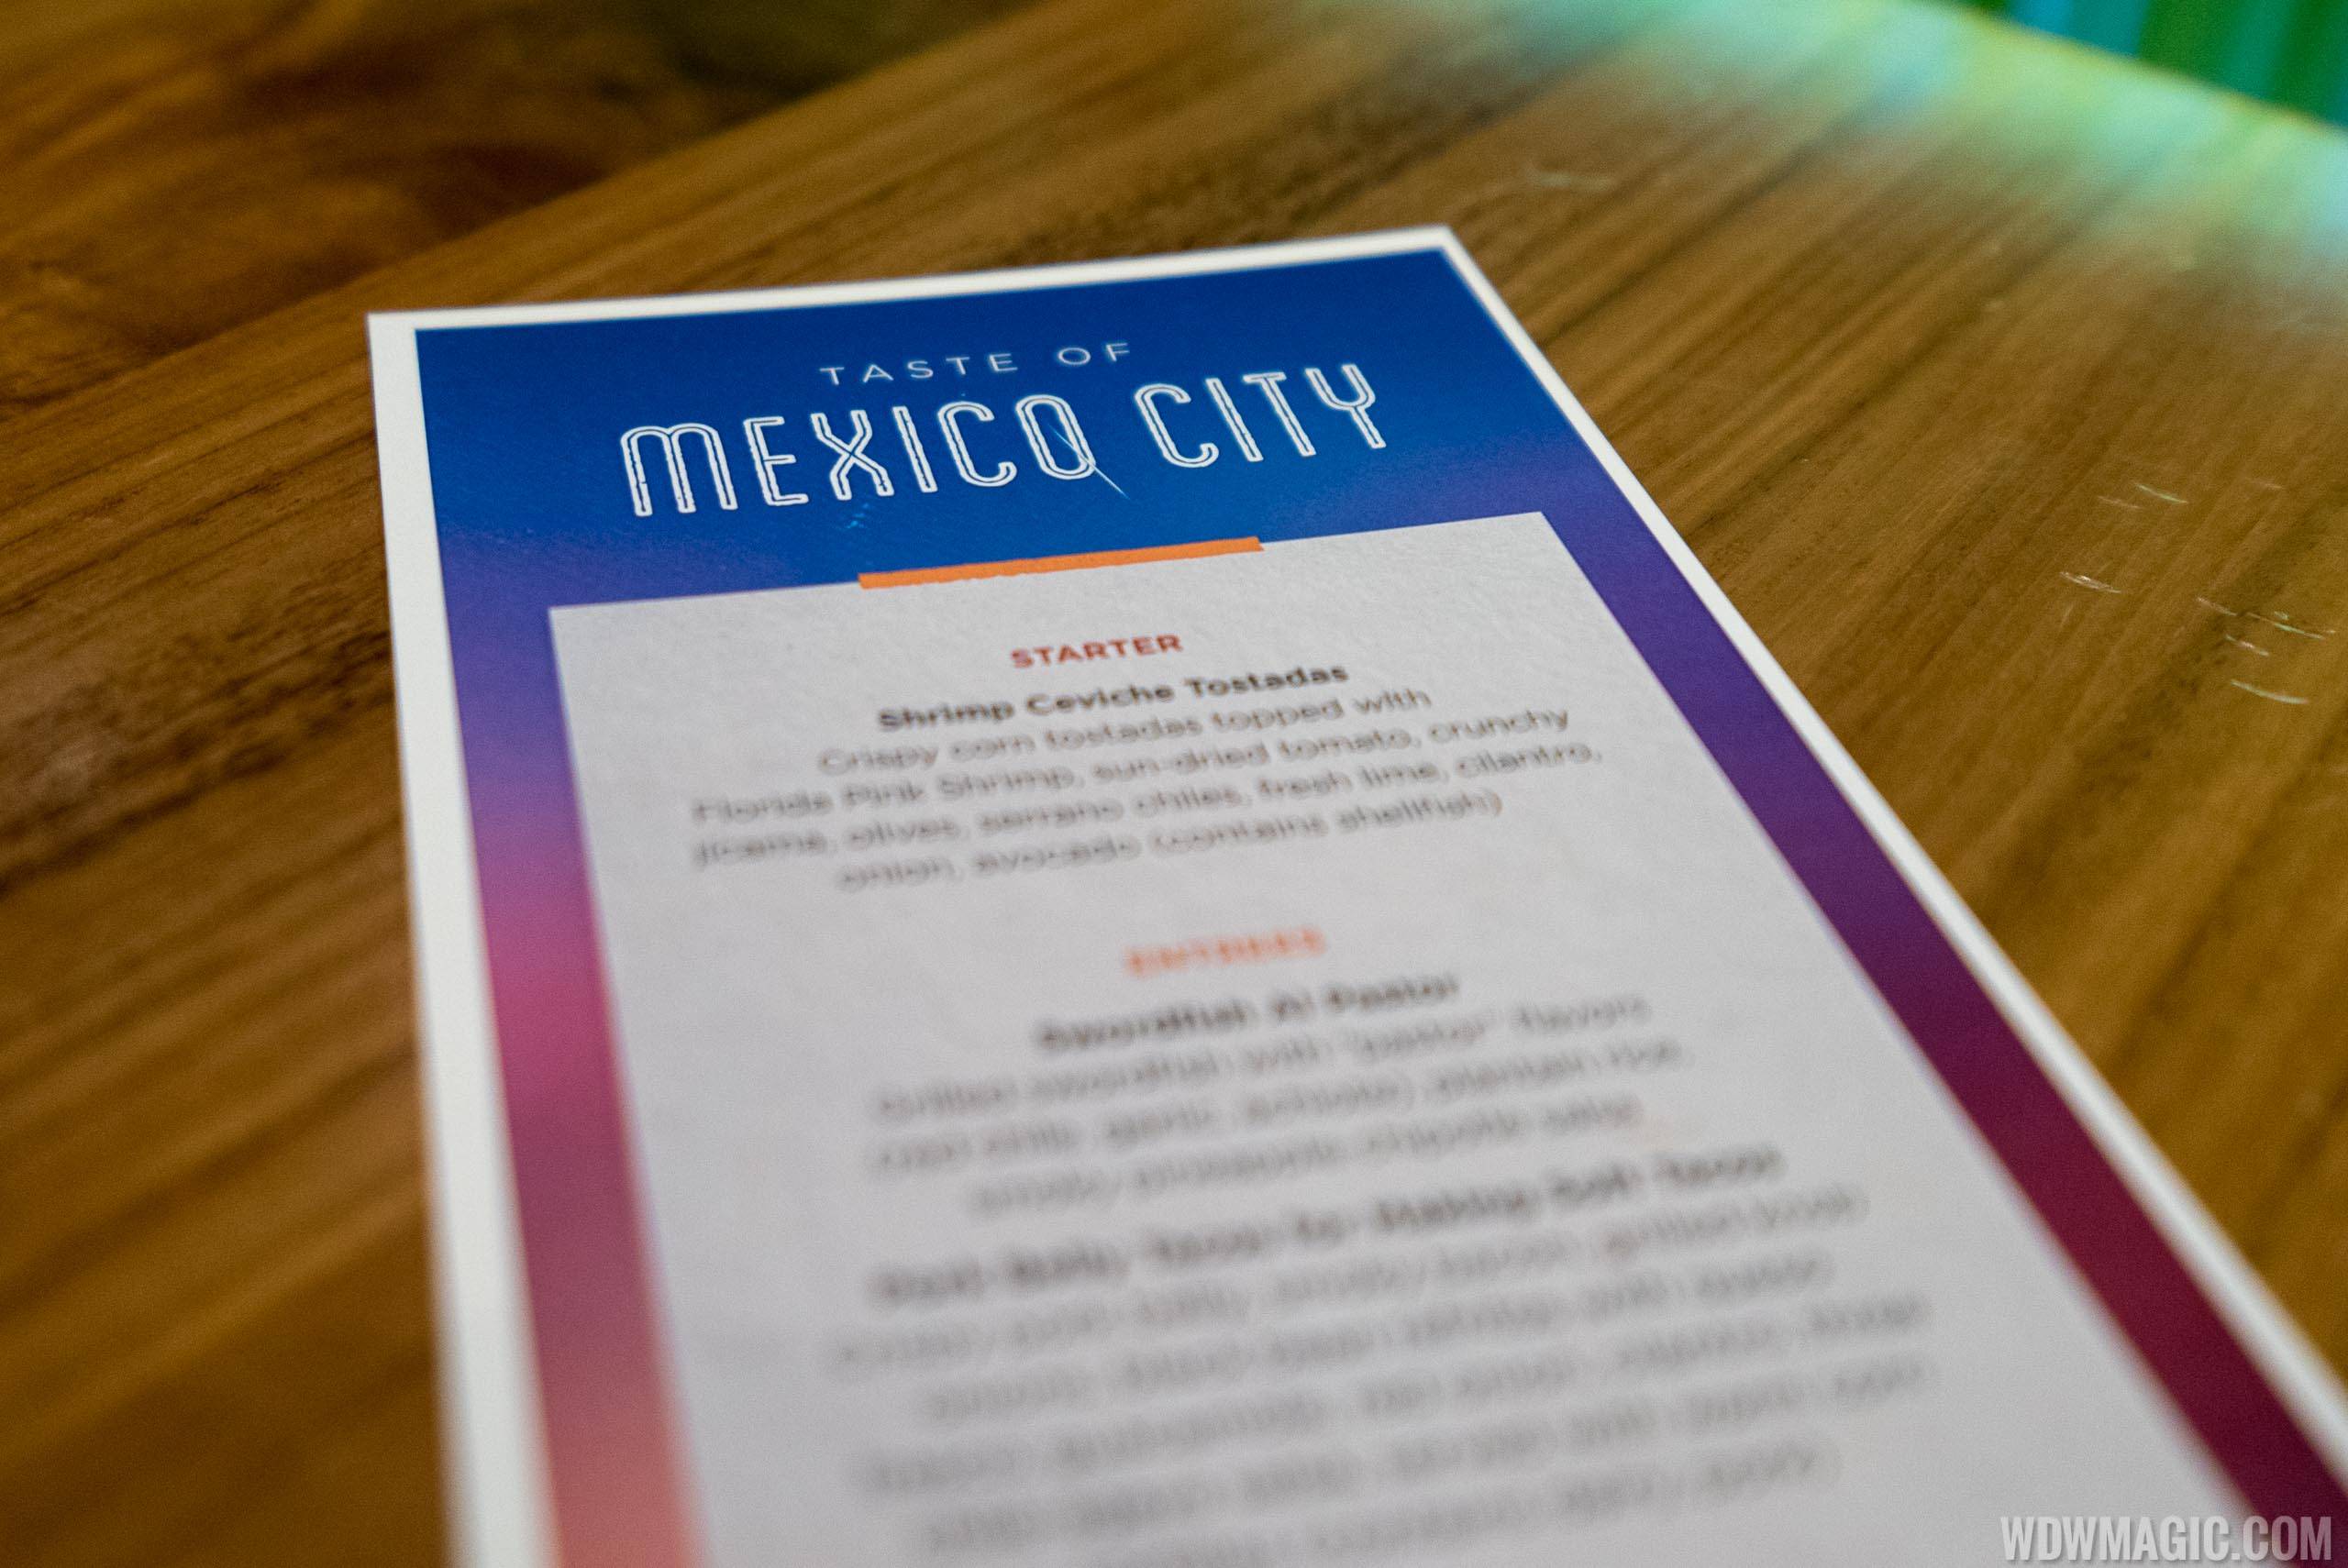 Frontera Cocina - Taste of Mexico City - menu